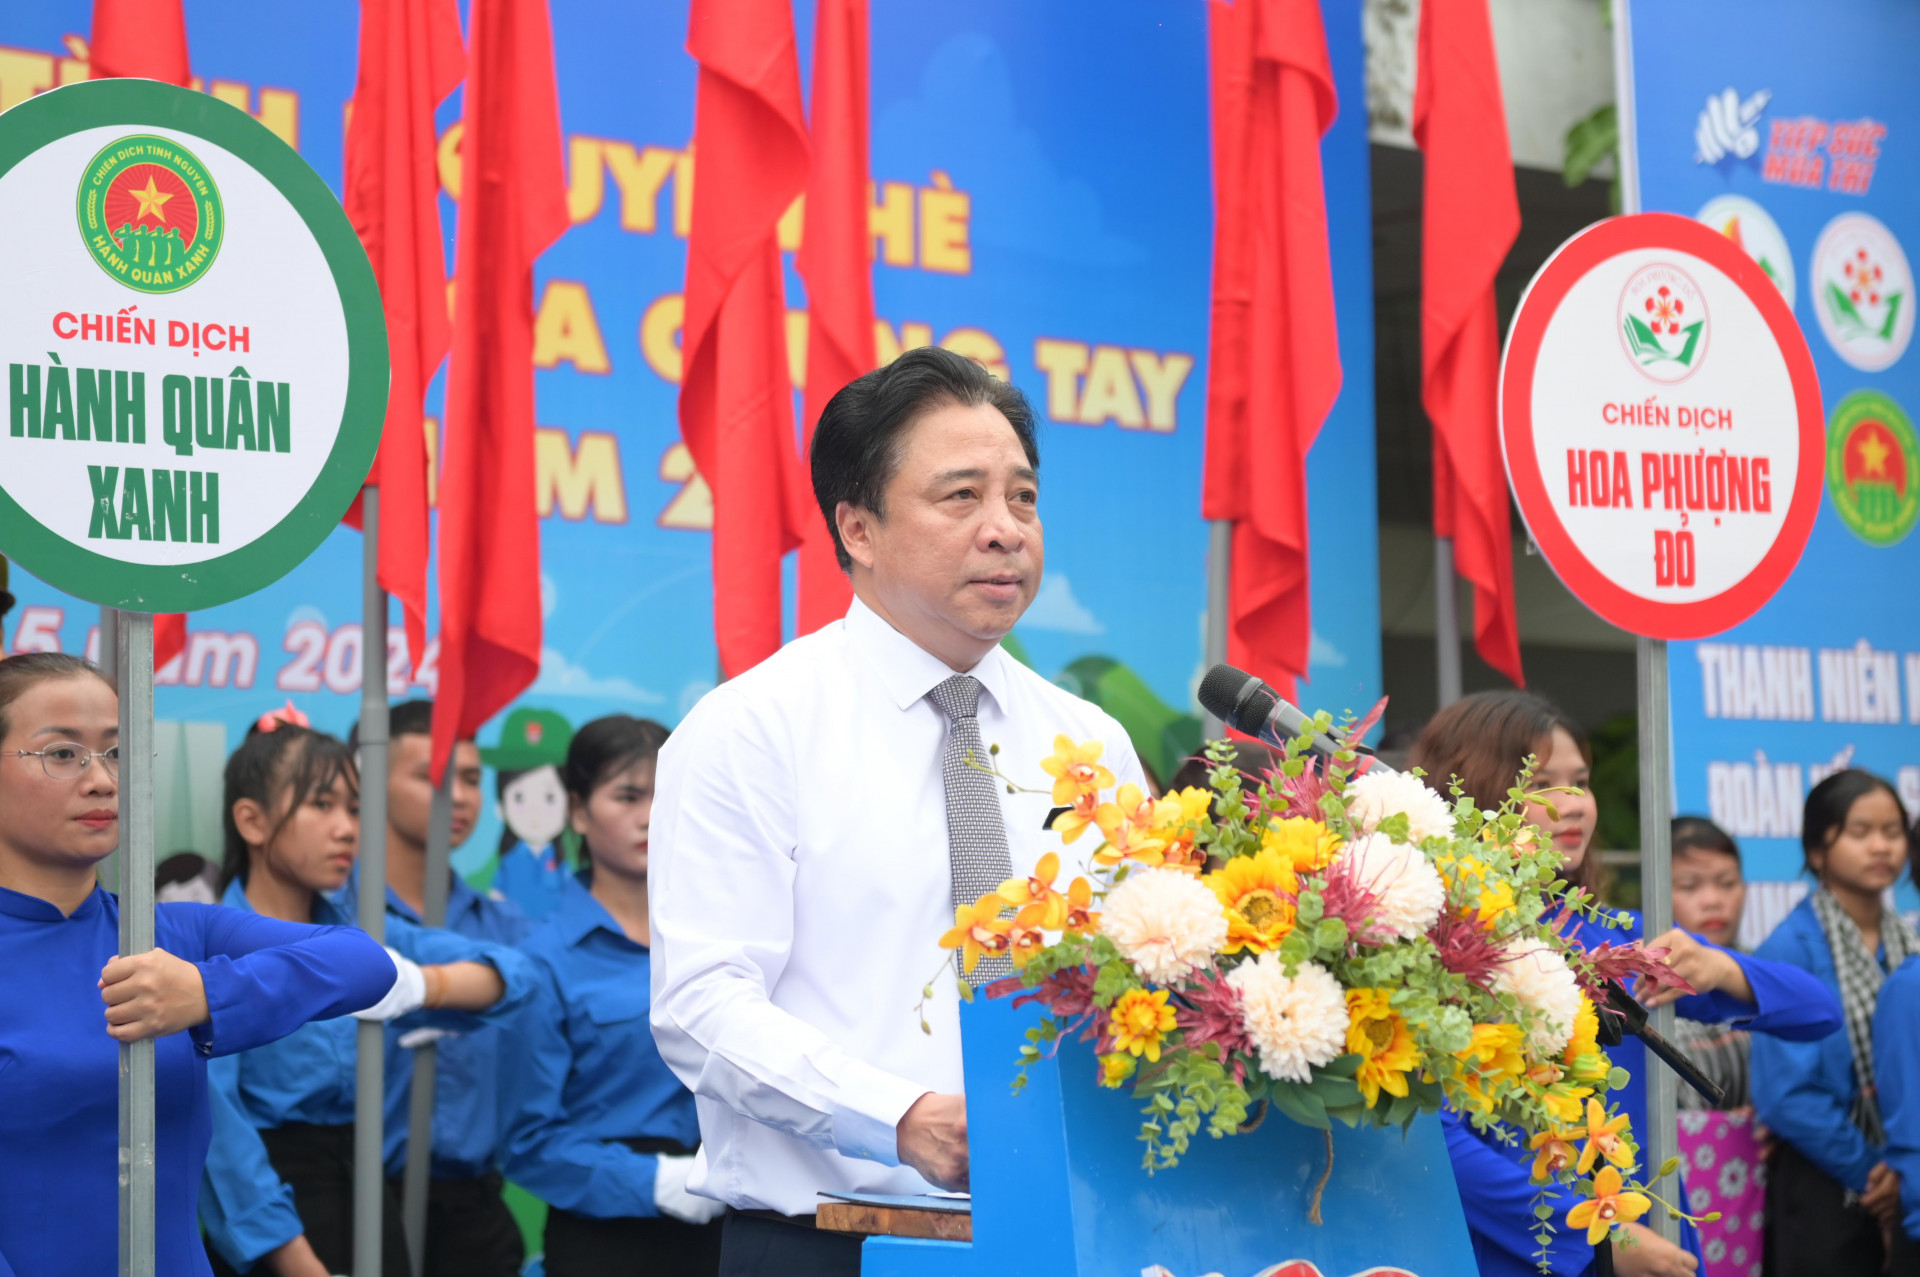 Đồng chí Nguyễn Khắc Toàn phát biểu chỉ đạo tại buổi lễ.